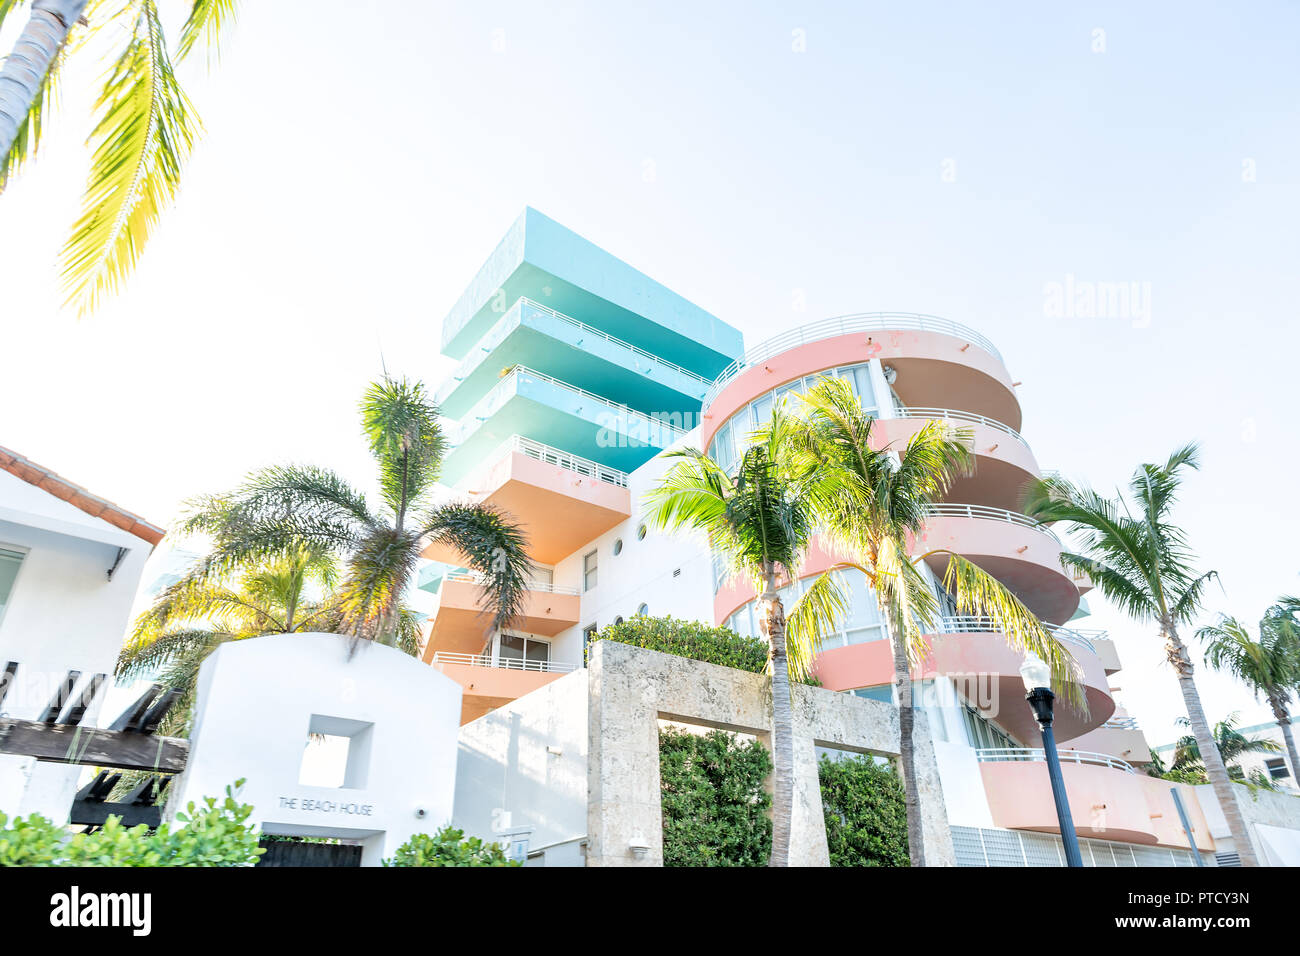 South Beach, USA - Mai 5, 2018: Eingang zum bunten das Beach House Hotel in Miami, Florida im Art déco-Viertel mit niemandem während der sonnigen Tag, Palm t Stockfoto